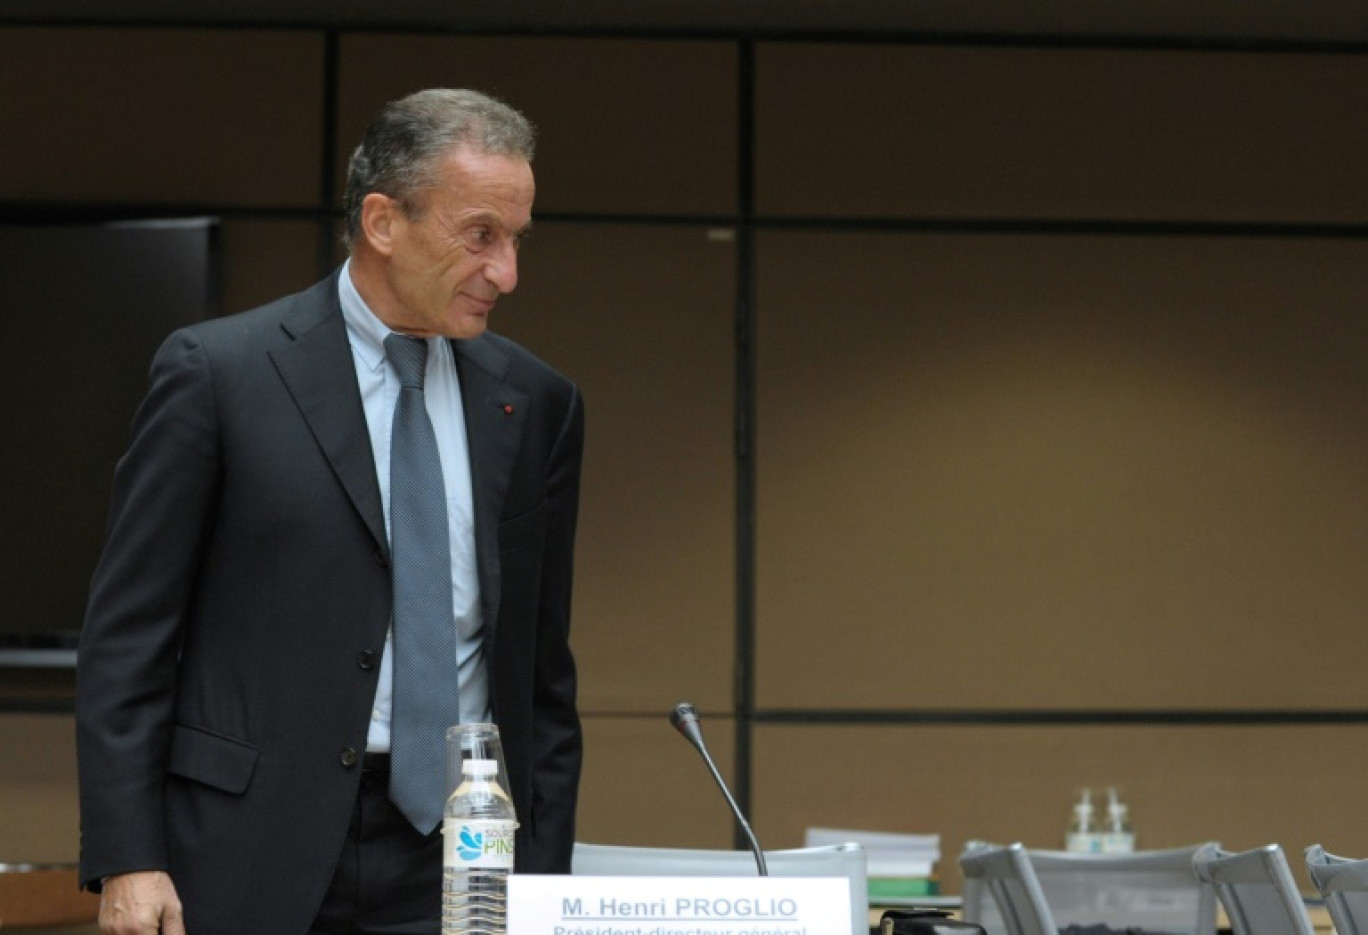 Le PDG d'EDF, Henri Proglio, arrive pour son audition devant une commission d'enquête parlementaire sur les prix de l'électricité, à Paris le 22 octobre 2014 © ERIC PIERMONT